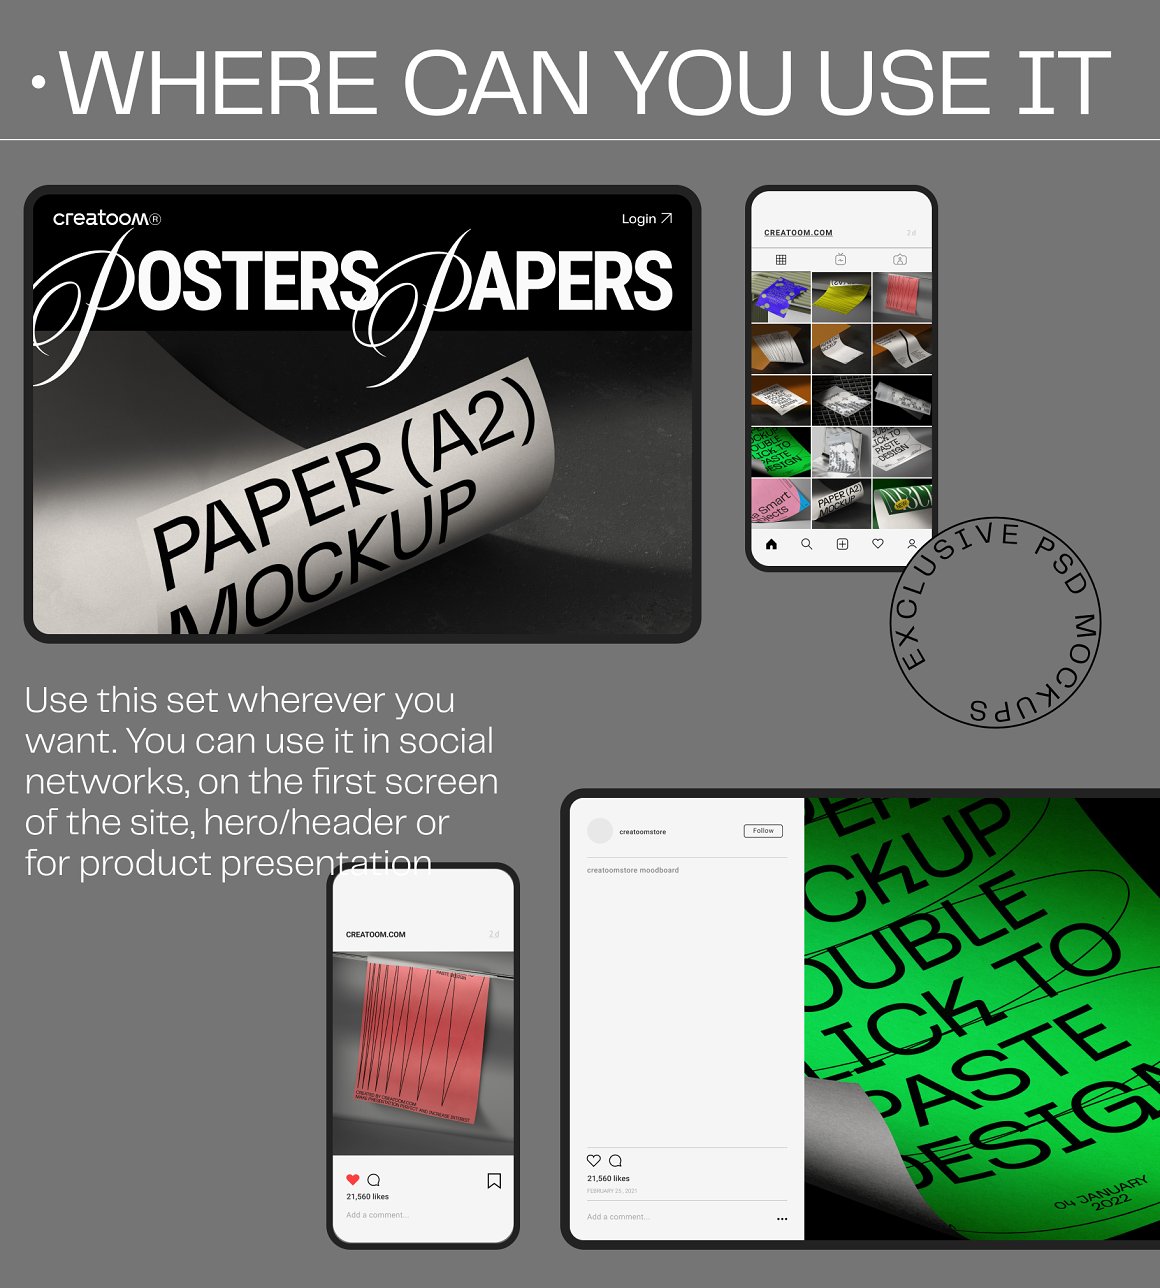 32个高级A4单页招贴传单海报设计作品贴图展示PS样机素材效果图 32 Poster & Paper mockups . 第4张